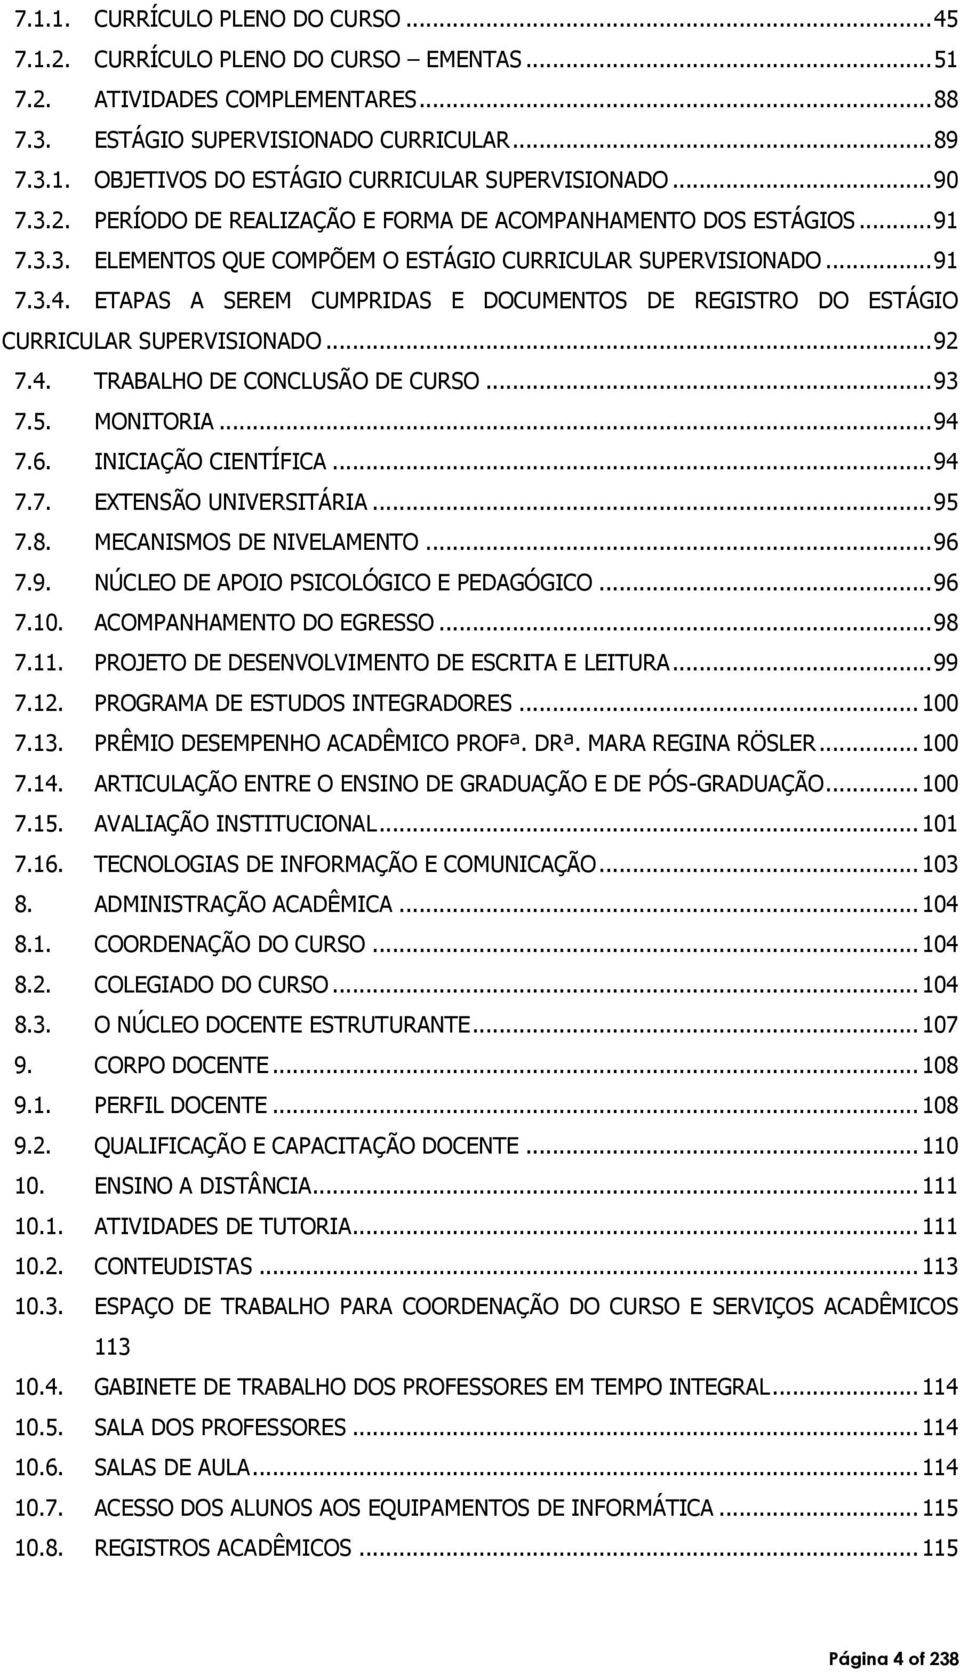 ETAPAS A SEREM CUMPRIDAS E DOCUMENTOS DE REGISTRO DO ESTÁGIO CURRICULAR SUPERVISIONADO... 92 7.4. TRABALHO DE CONCLUSÃO DE CURSO... 93 7.5. MONITORIA... 94 7.6. INICIAÇÃO CIENTÍFICA... 94 7.7. EXTENSÃO UNIVERSITÁRIA.